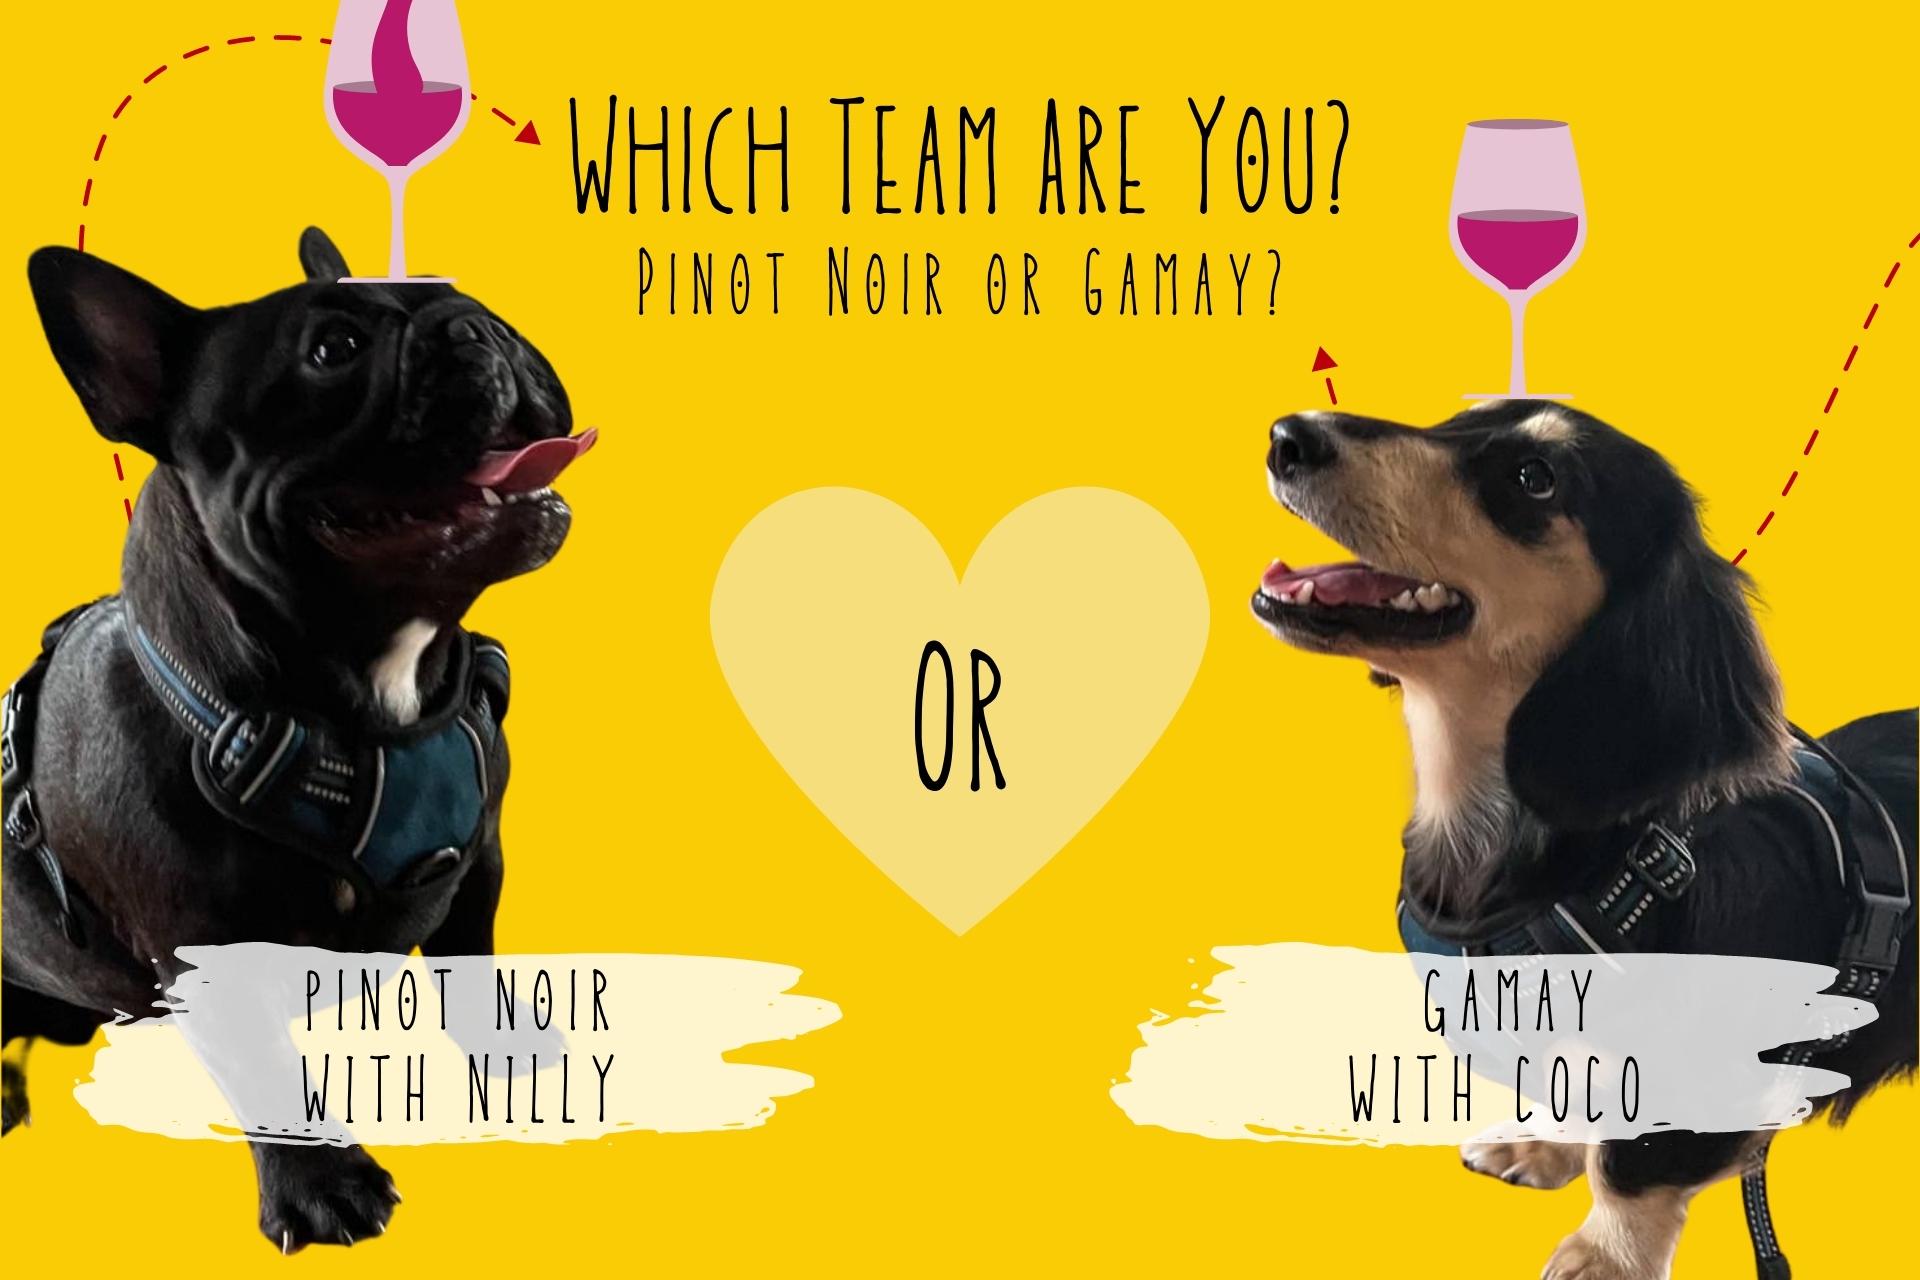 ปิโนต์ นัวร์ (Pinot Noir) กับ กาเมย์ (Gamay) องุ่น 2 พันธ์กับเสน่ห์ที่แตกต่างกัน